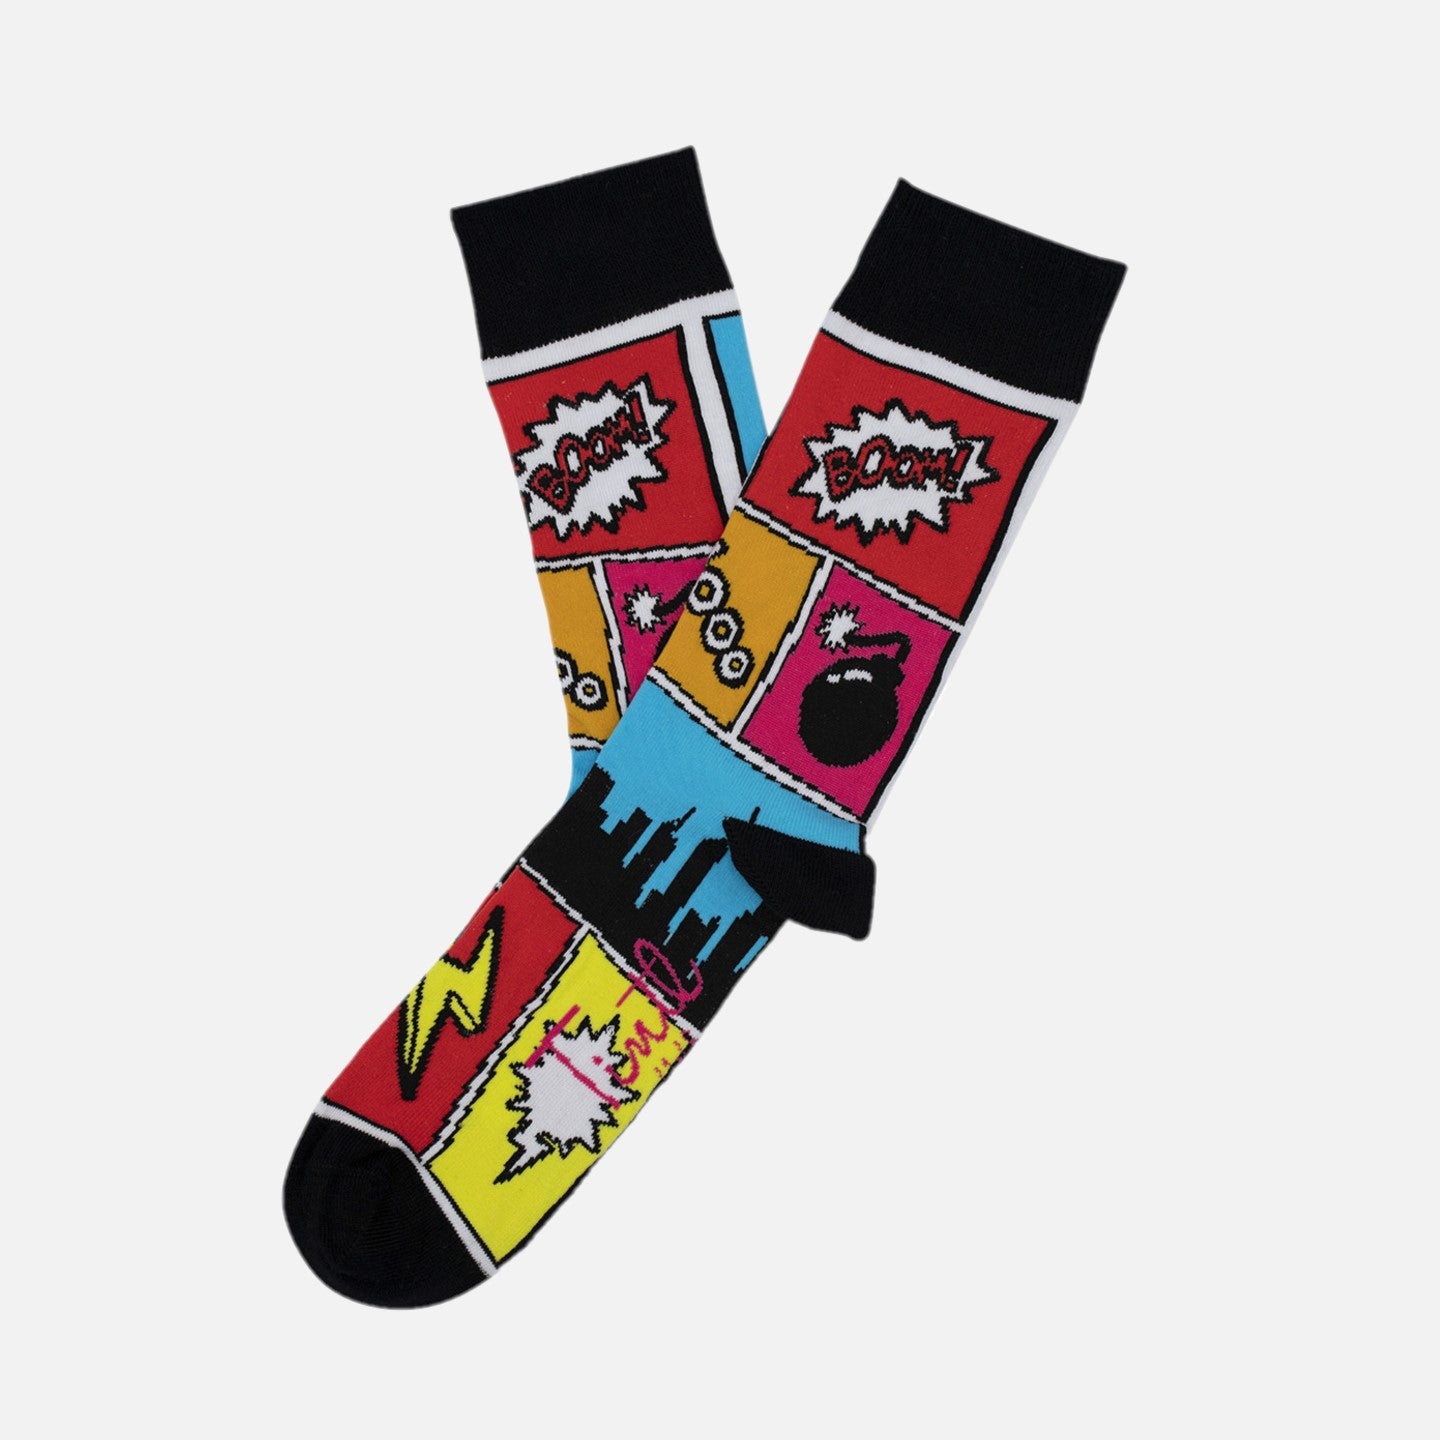 Socken mit Motiven aus Comic schwarz-bunt